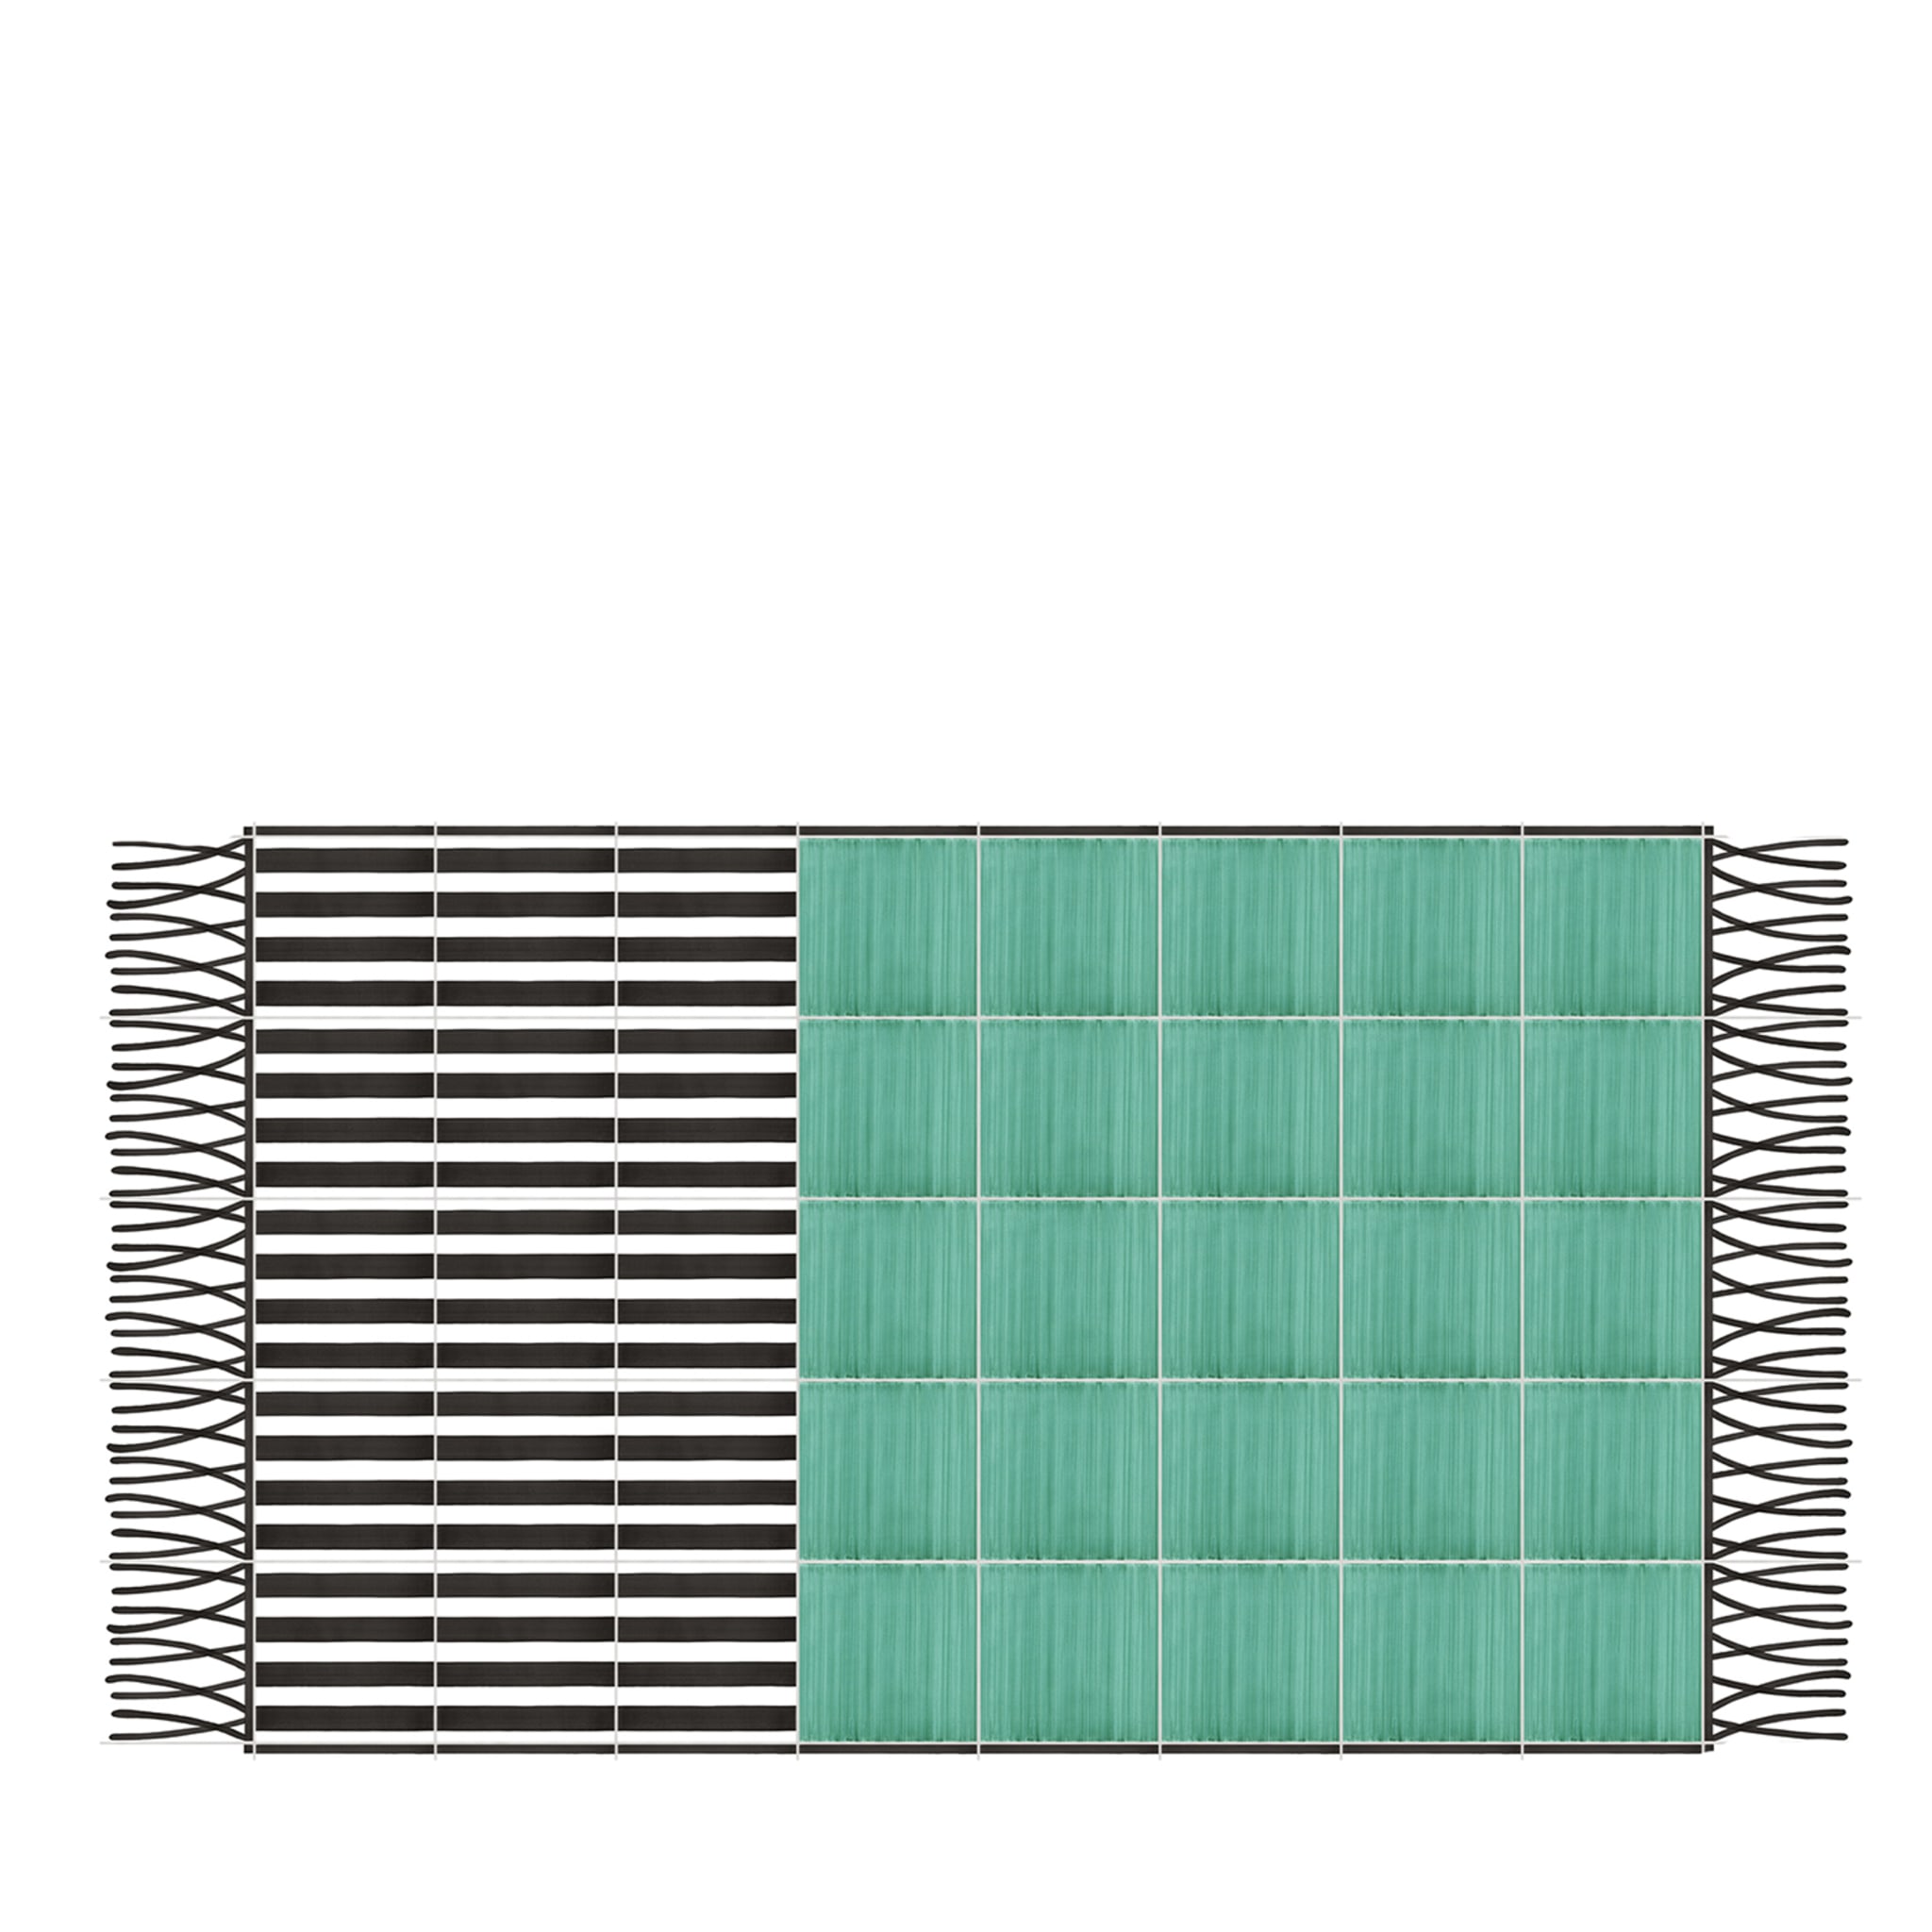 Carpet Green and Striped Ceramic Composition by Giuliano Andrea dell’Uva 200 x 140 - Main view